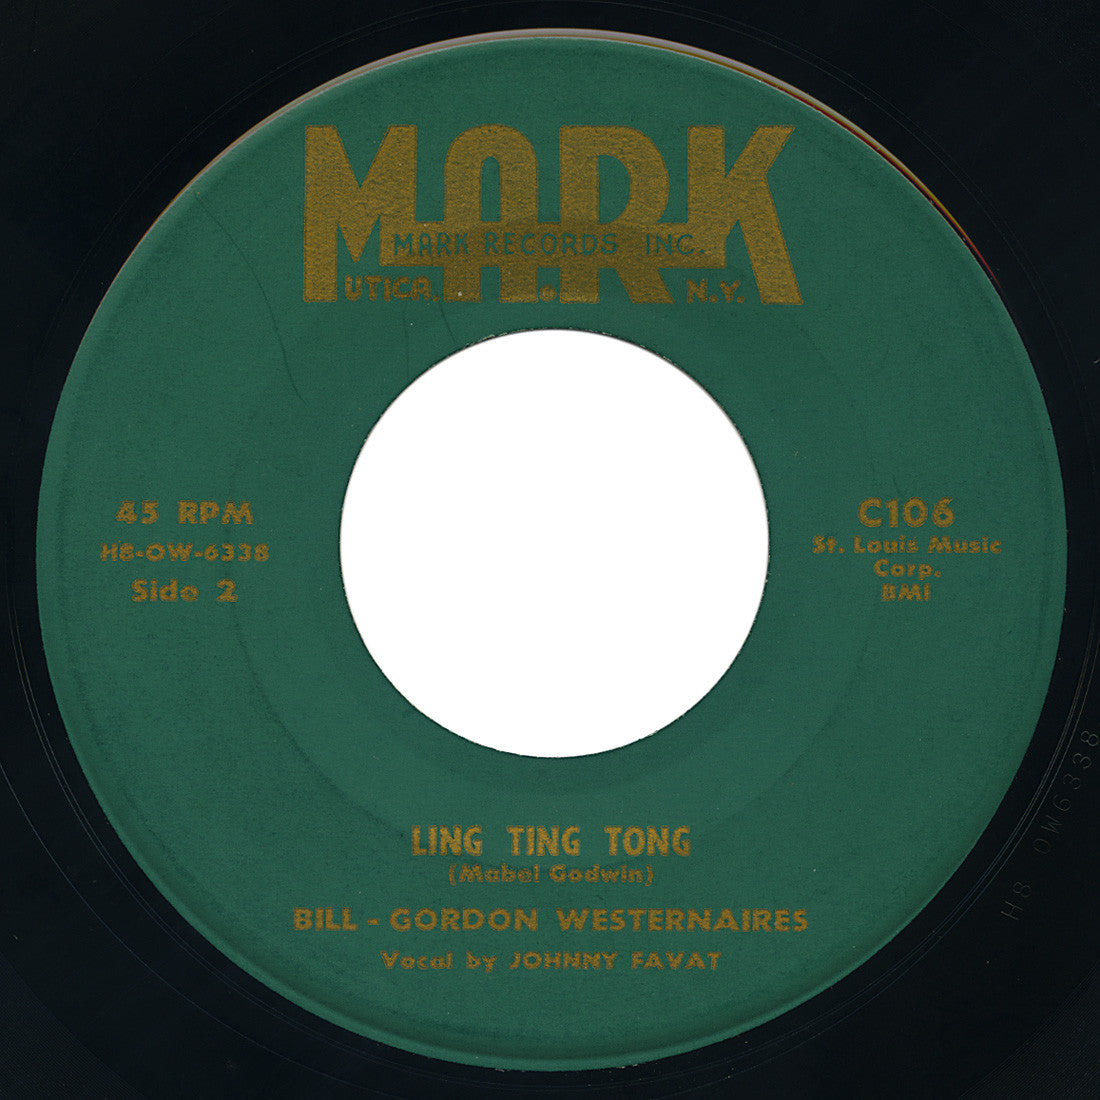 Bill - Gordon Westernaires – Ling Ting Tong – Mark